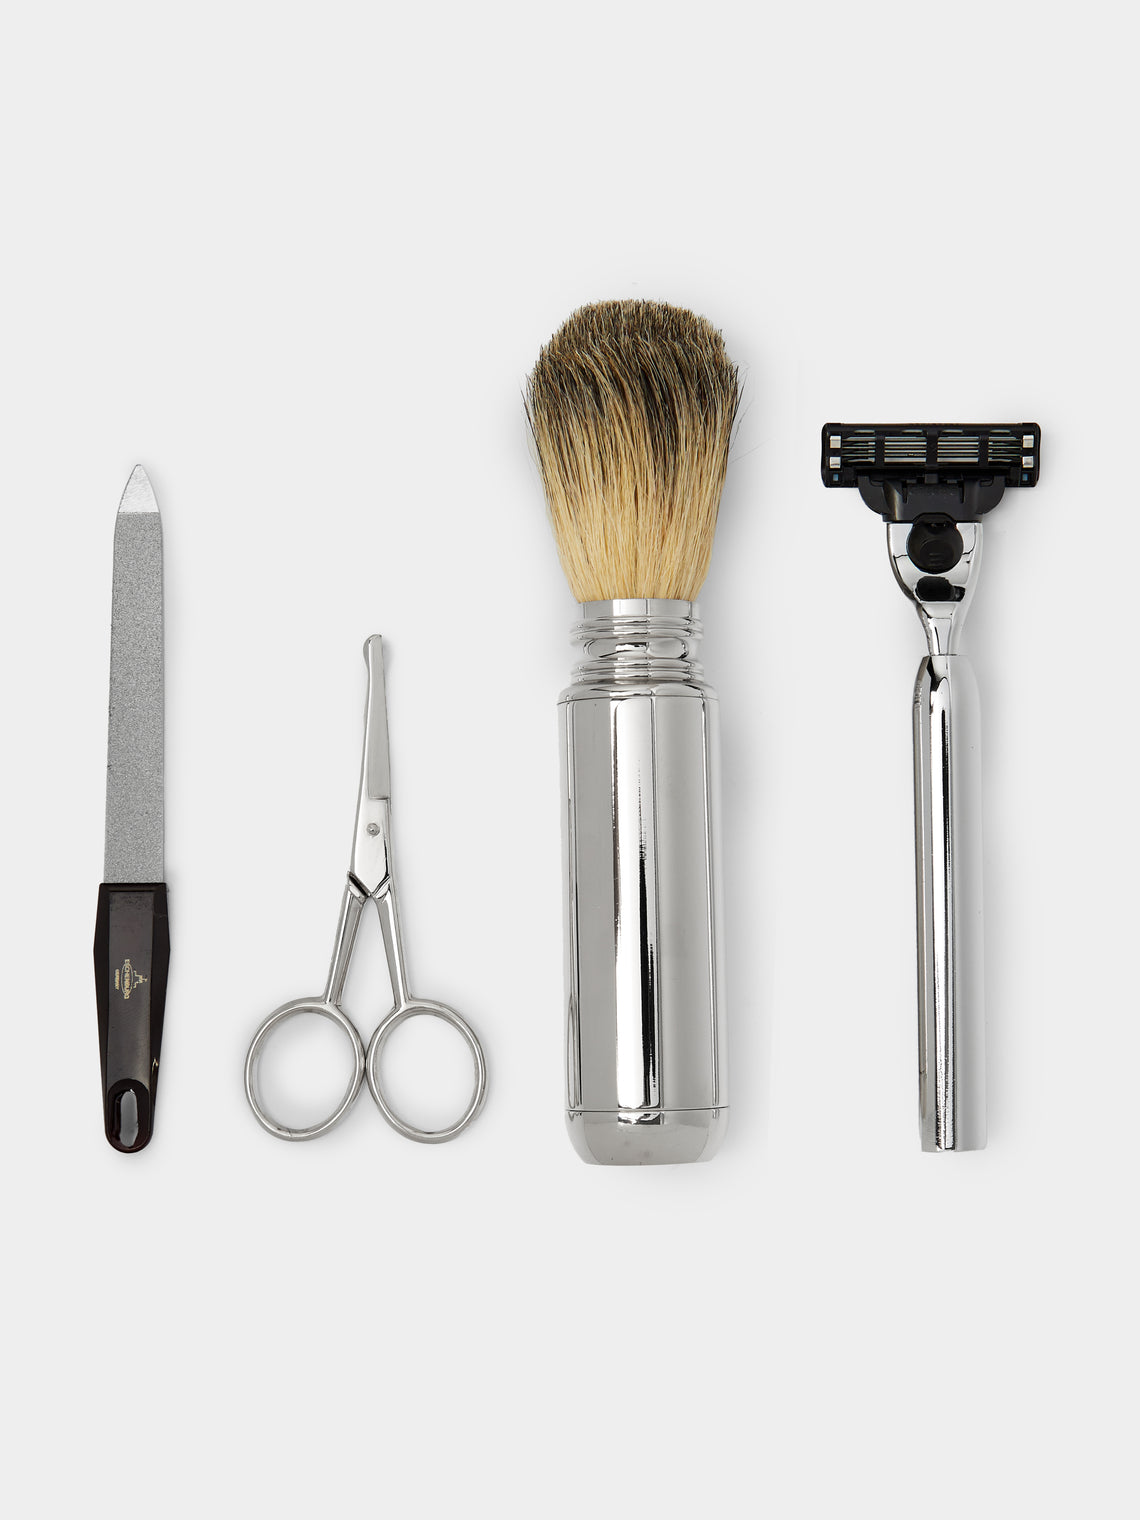 F. Hammann - Leather Shaving Kit -  - ABASK